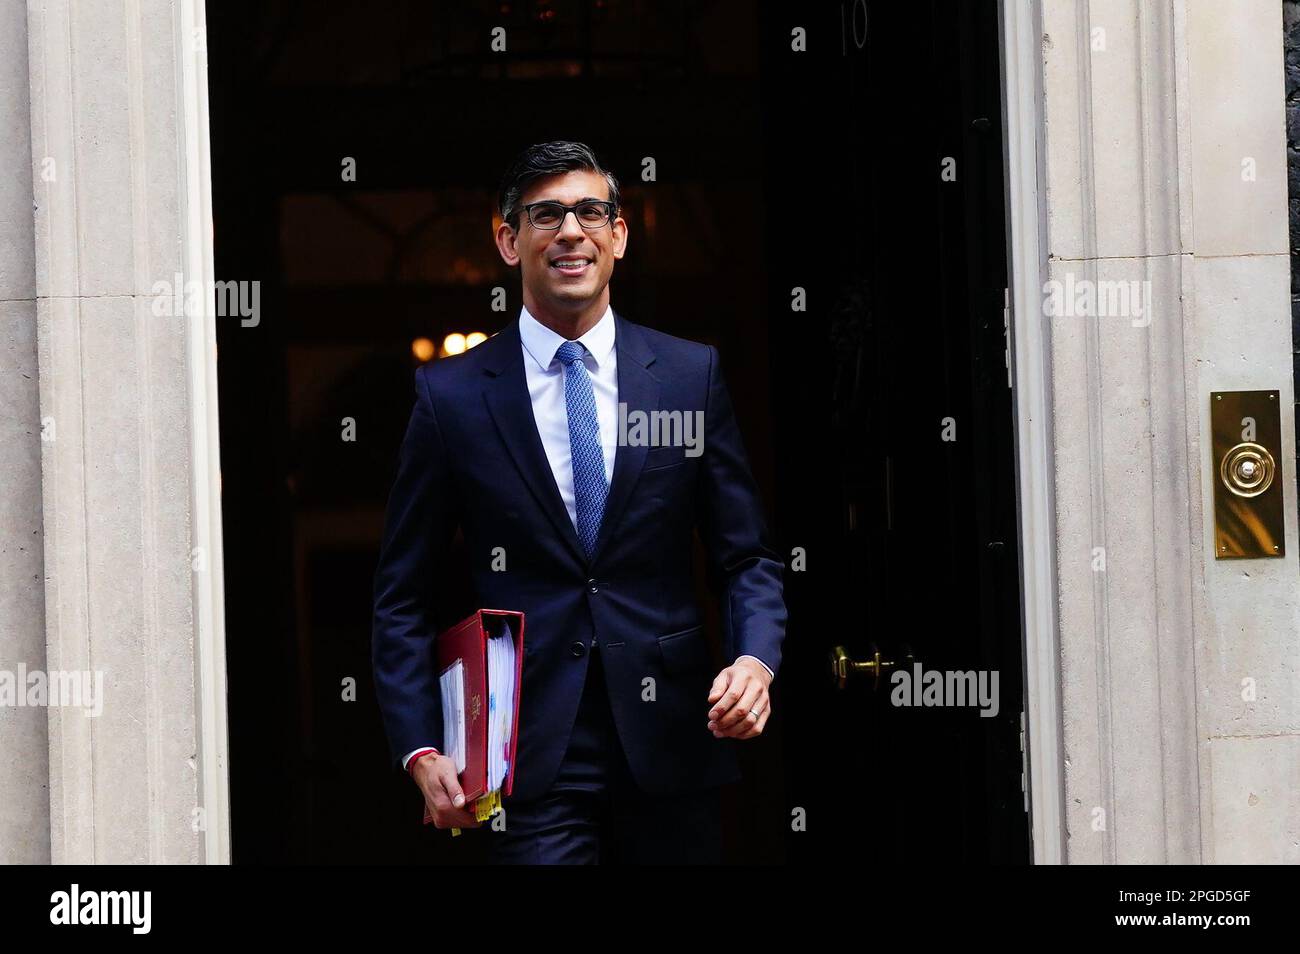 Le Premier ministre Rishi Sunak quitte le 10 Downing Street, Londres, pour assister aux questions du Premier ministre au Parlement. Date de la photo: Mercredi 22 mars 2023. Banque D'Images